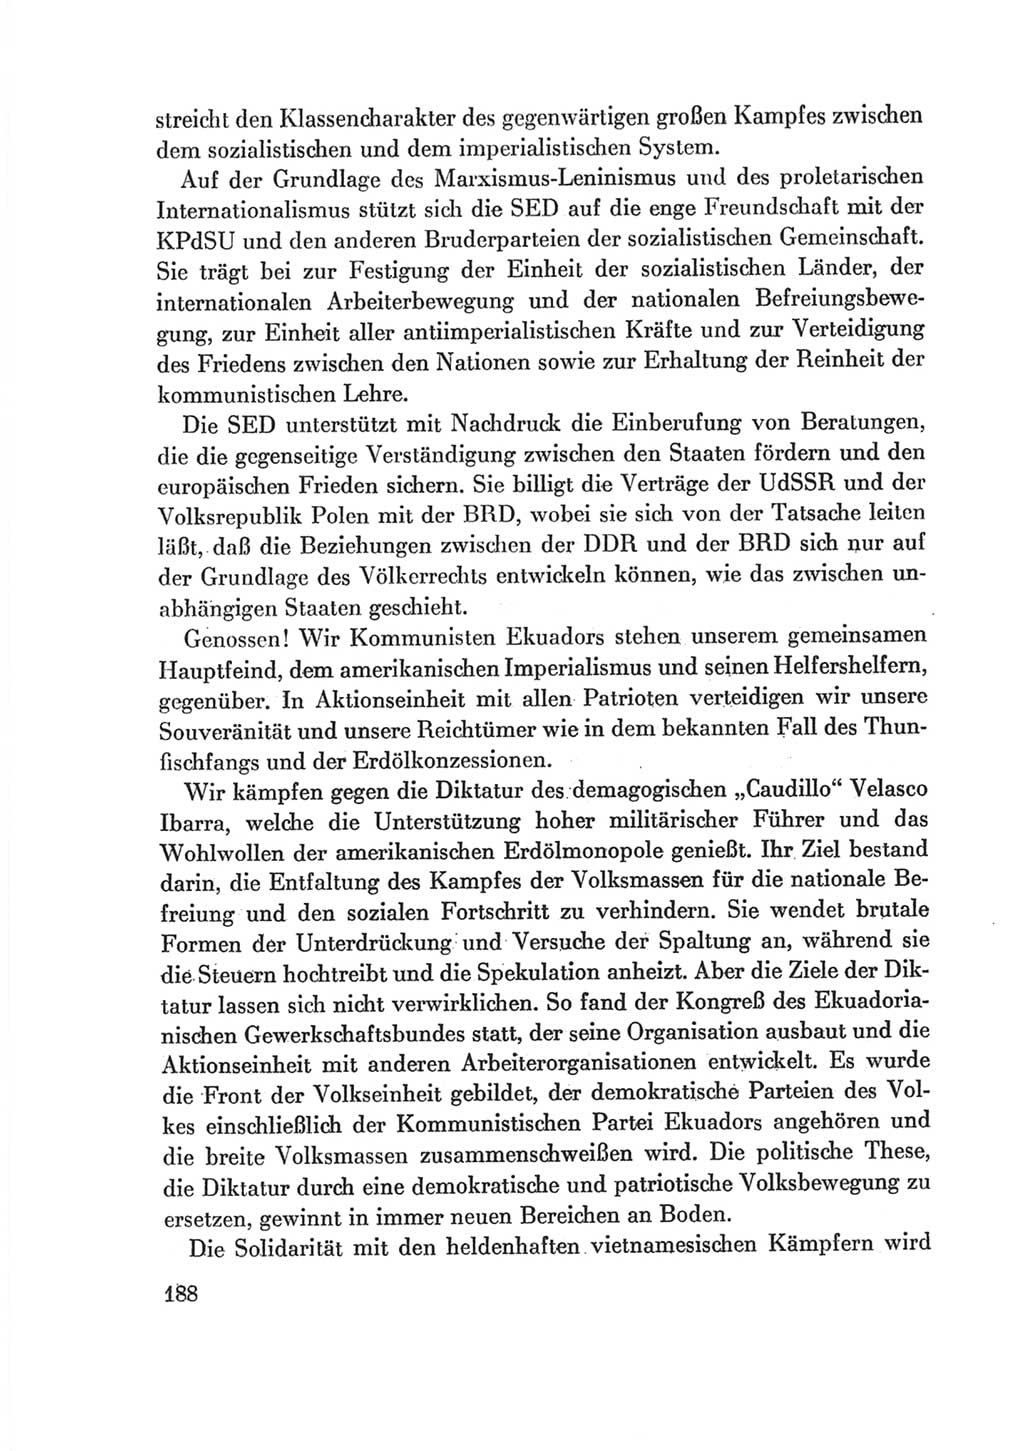 Protokoll der Verhandlungen des Ⅷ. Parteitages der Sozialistischen Einheitspartei Deutschlands (SED) [Deutsche Demokratische Republik (DDR)] 1971, Band 2, Seite 188 (Prot. Verh. Ⅷ. PT SED DDR 1971, Bd. 2, S. 188)